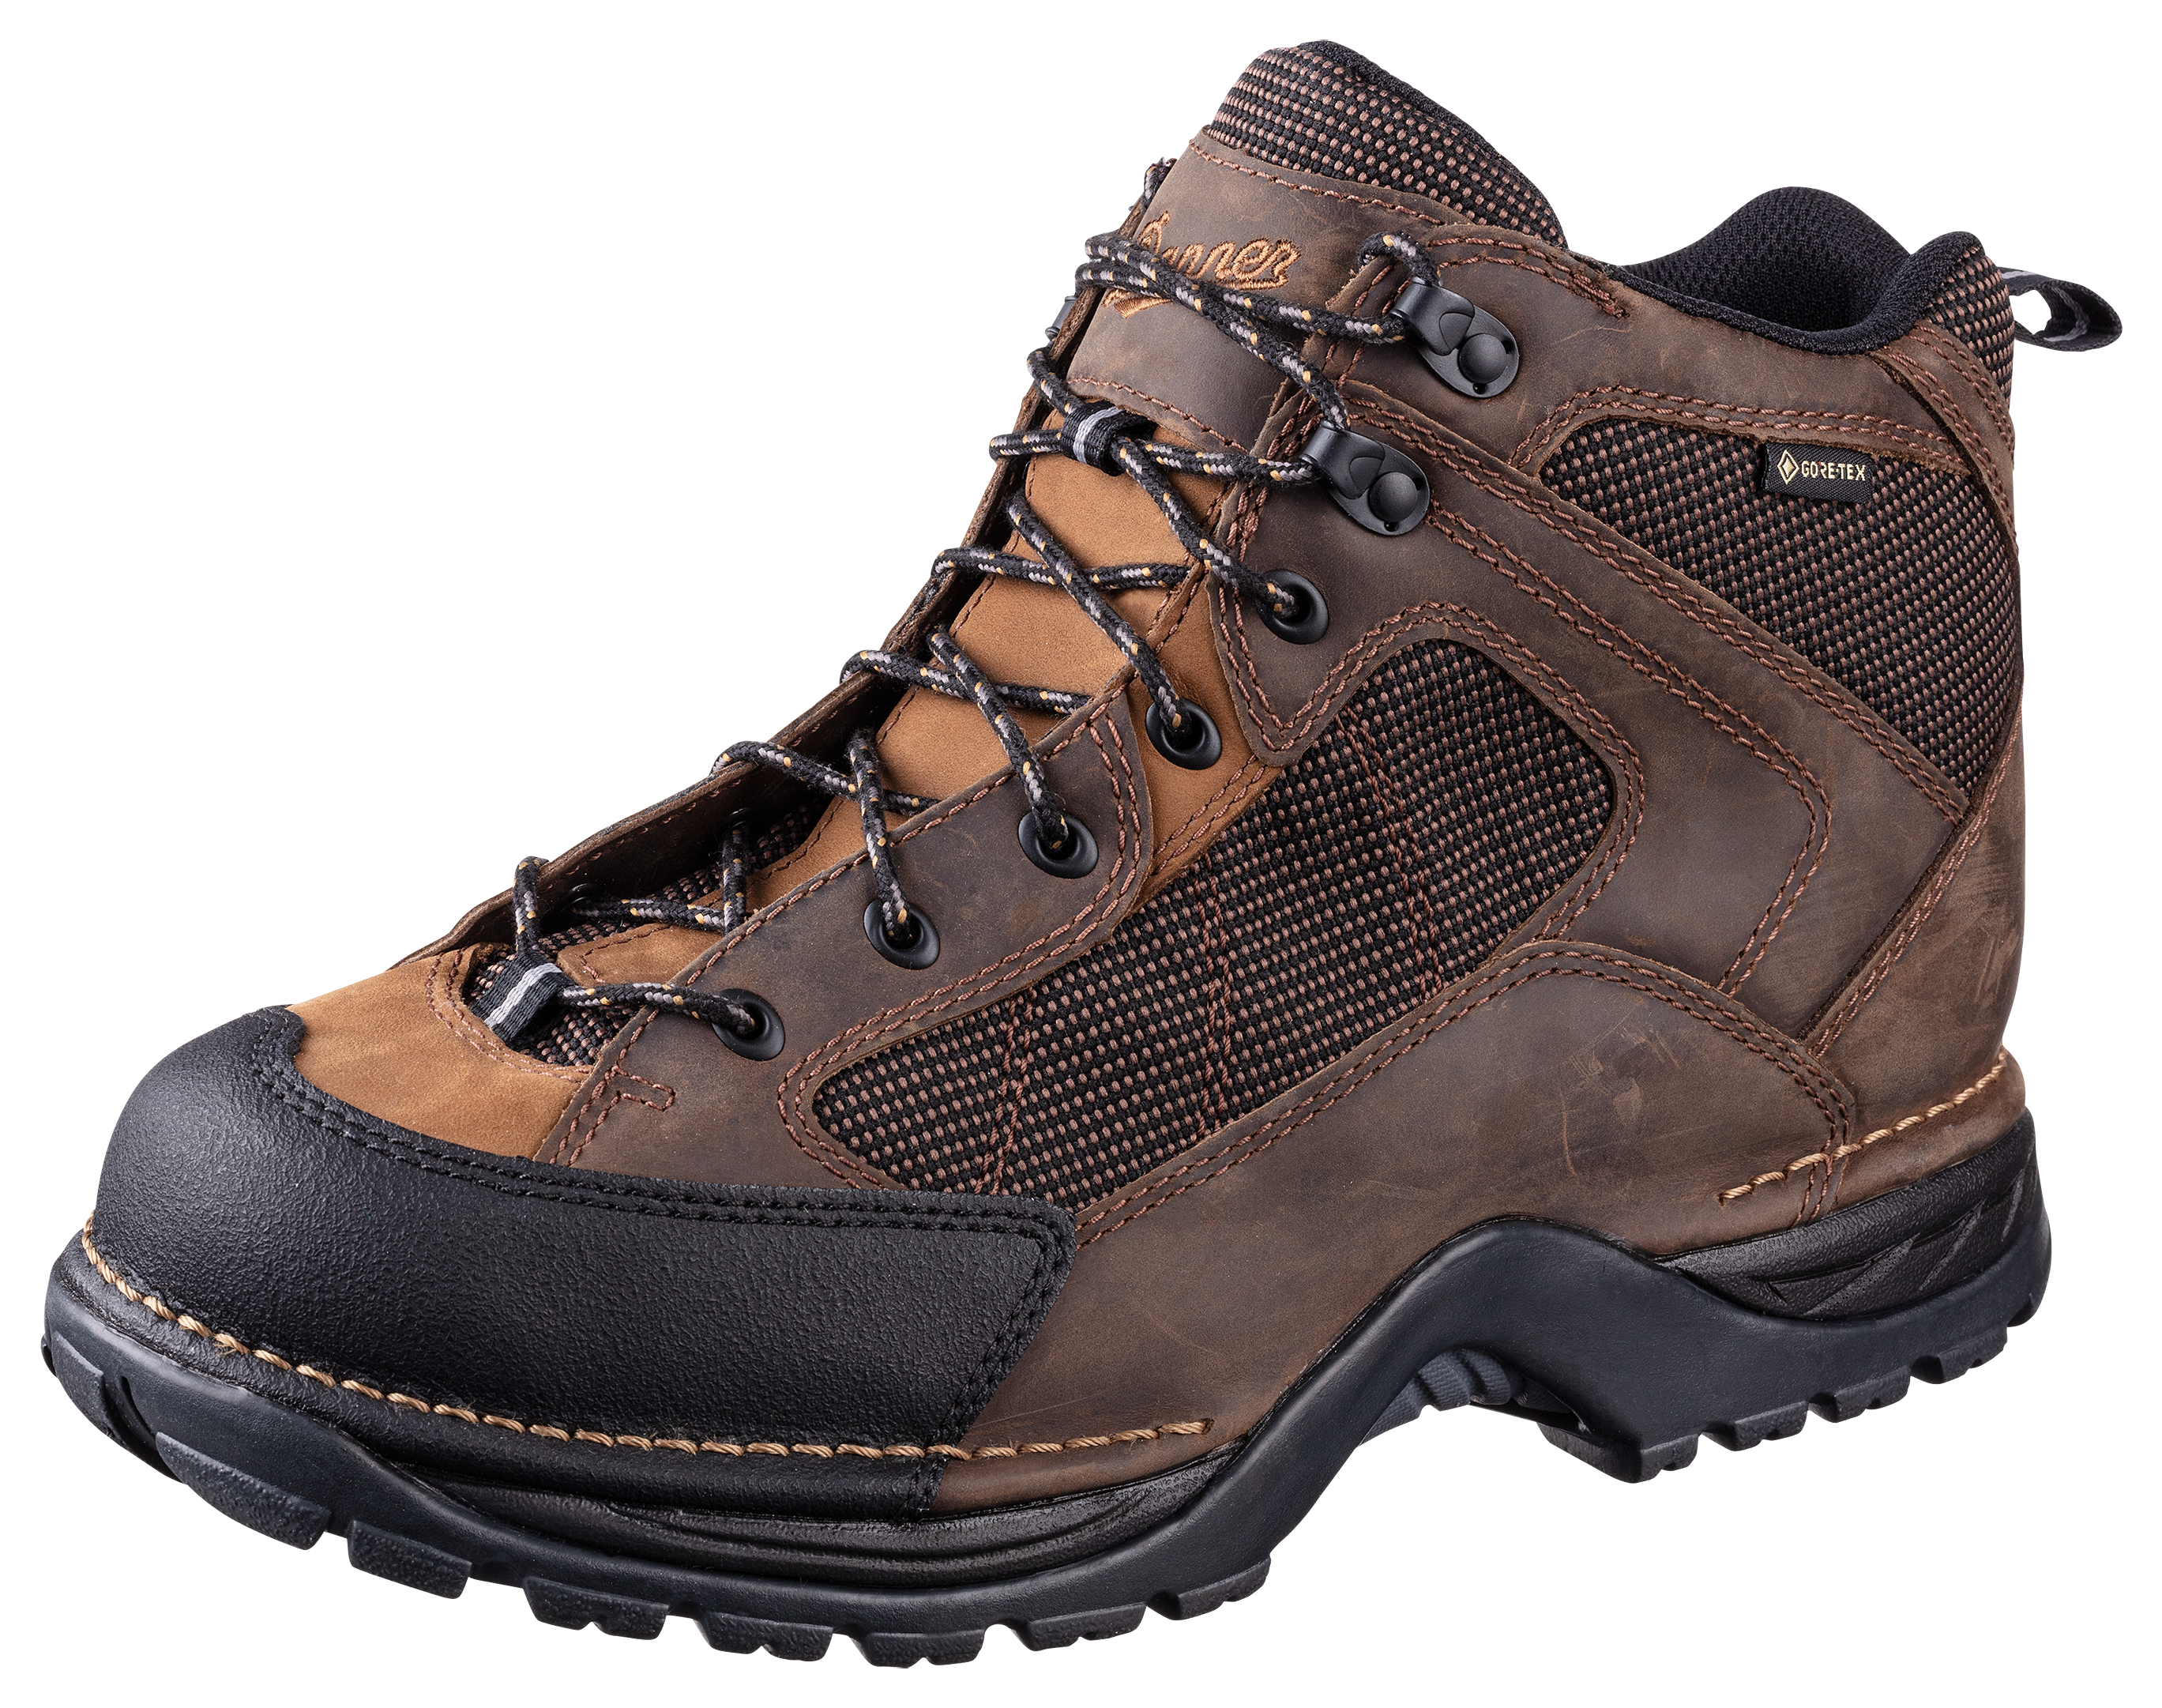 Danner Radical 452 GORE-TEX Hiking Boots for Men - Dark Brown - 11.5M